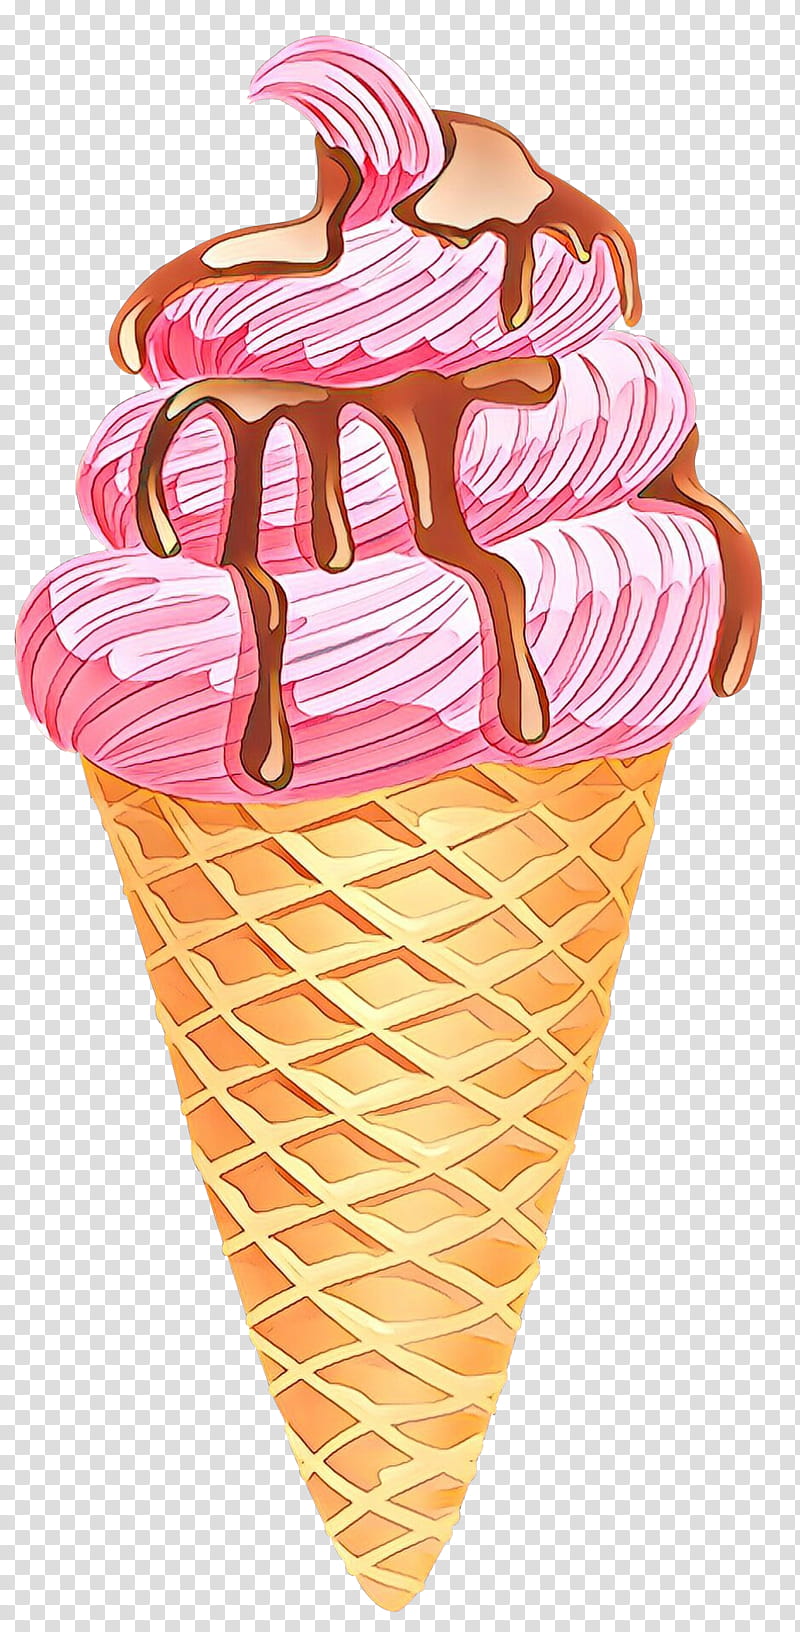 Ice Cream Cone, Cartoon, Ice Cream Cones, Sundae, Neapolitan Ice Cream, Milkshake, Mcdonalds Vanilla Ice Cream Cone, Chocolate Ice Cream transparent background PNG clipart